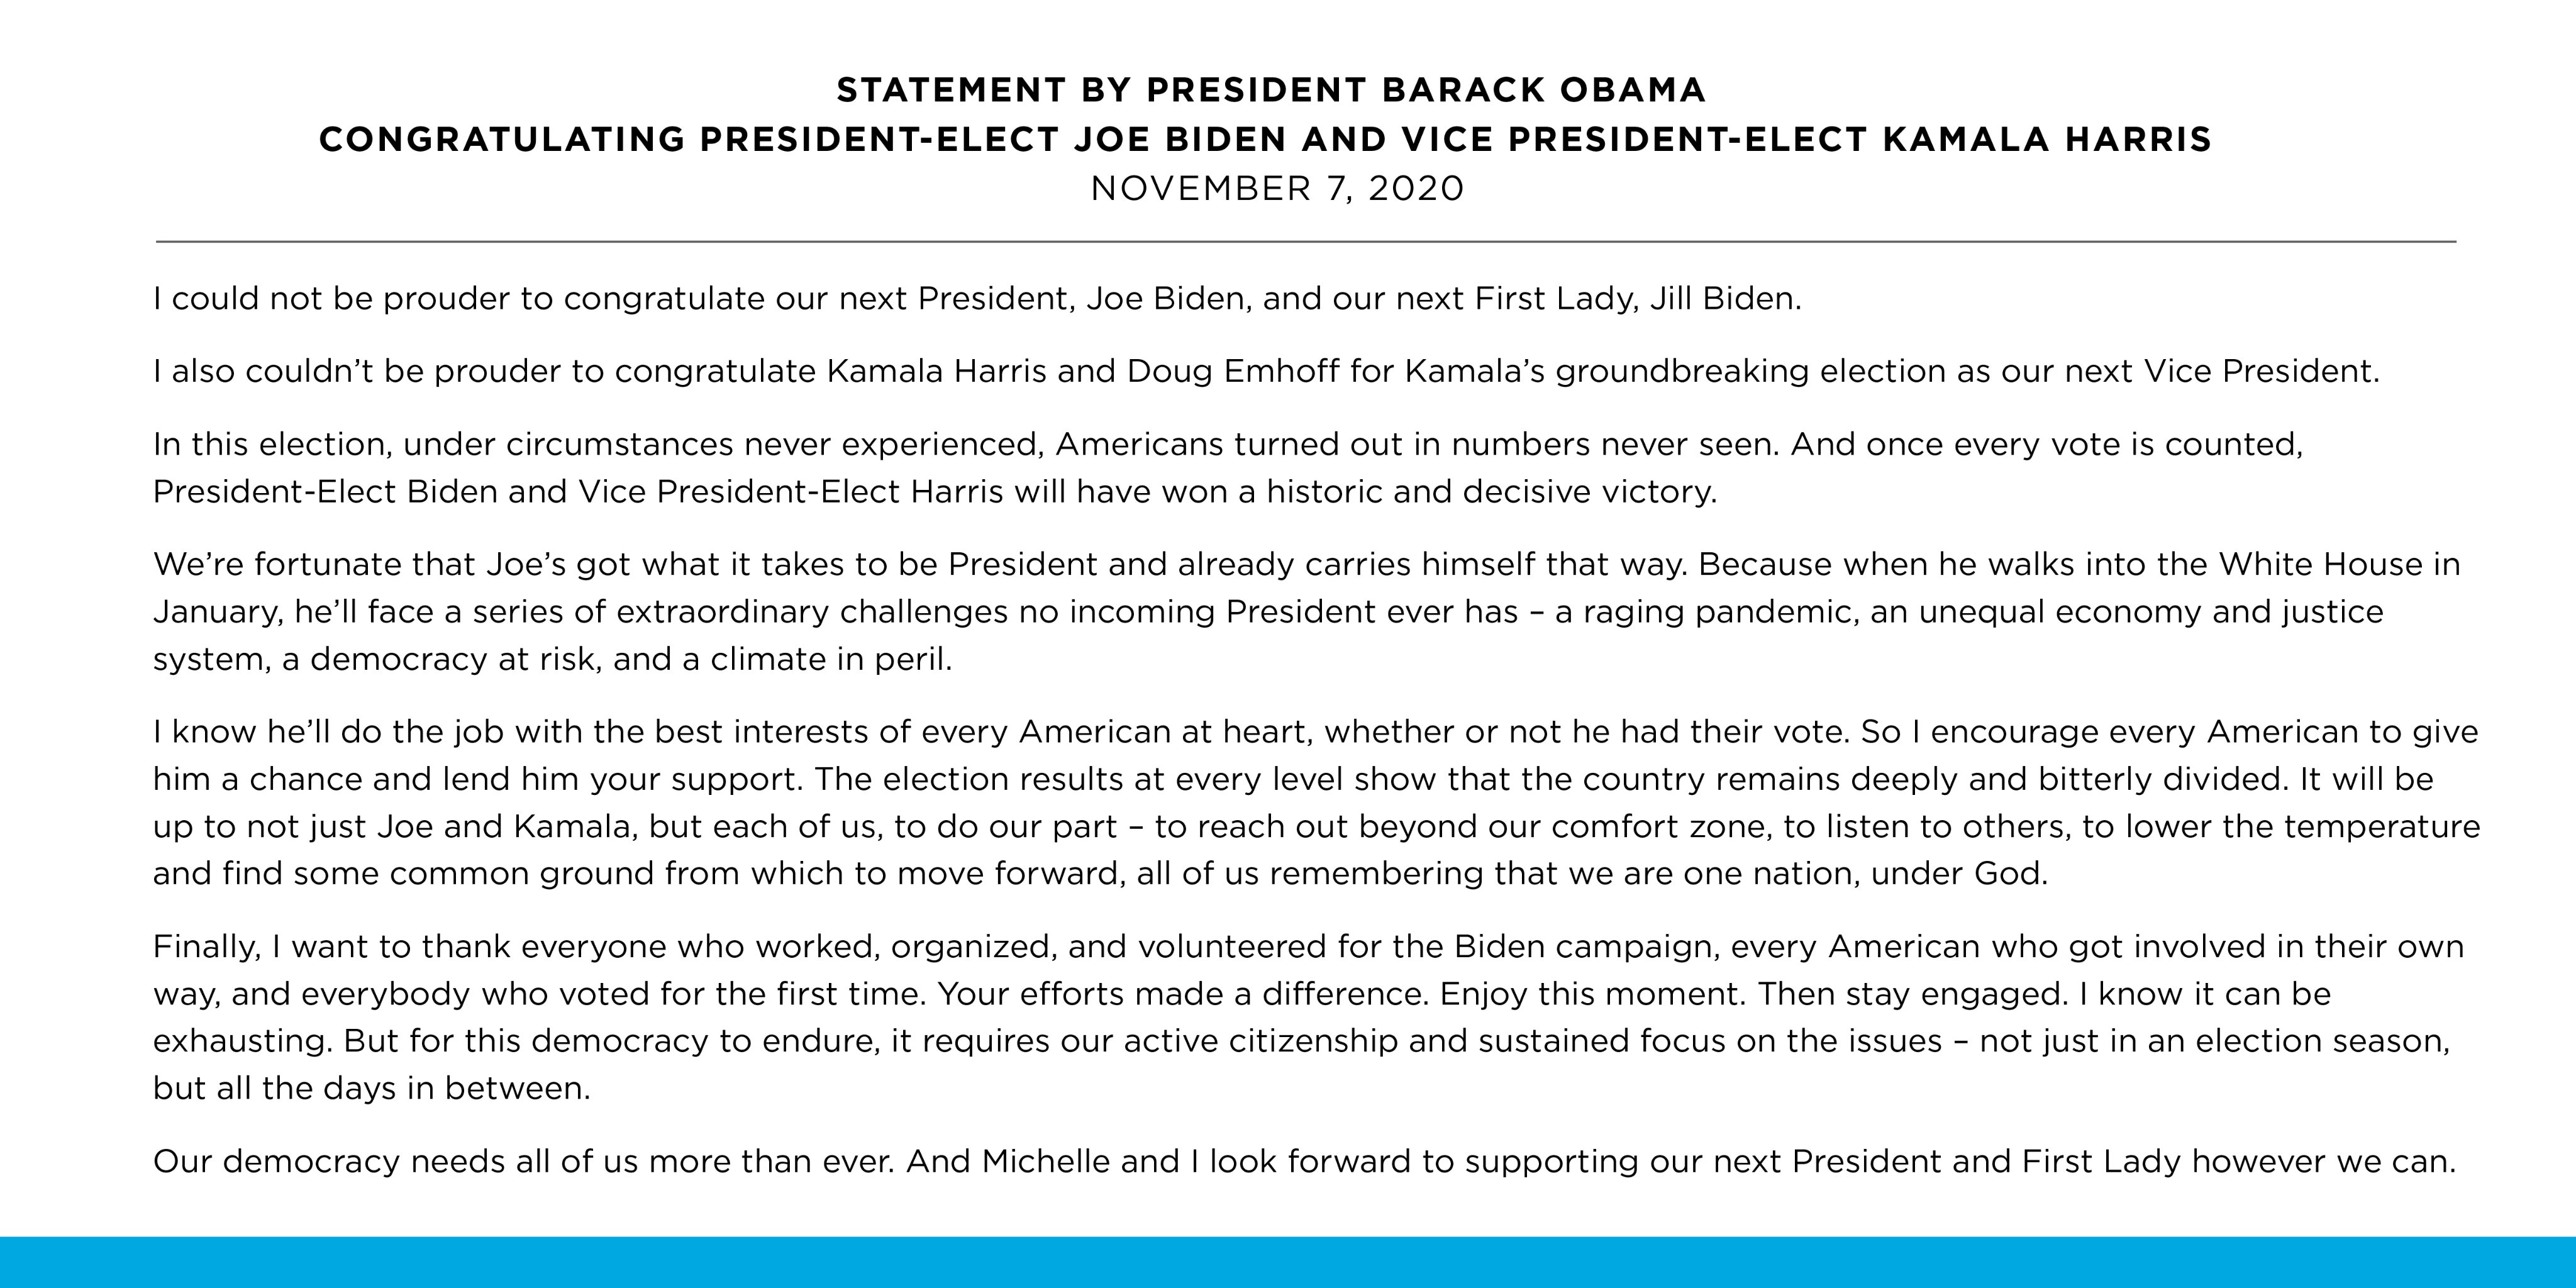 "Нам повезло". Обама отреагировал на победу Байдена на президентских выборах в США. Скриншот: Твиттер